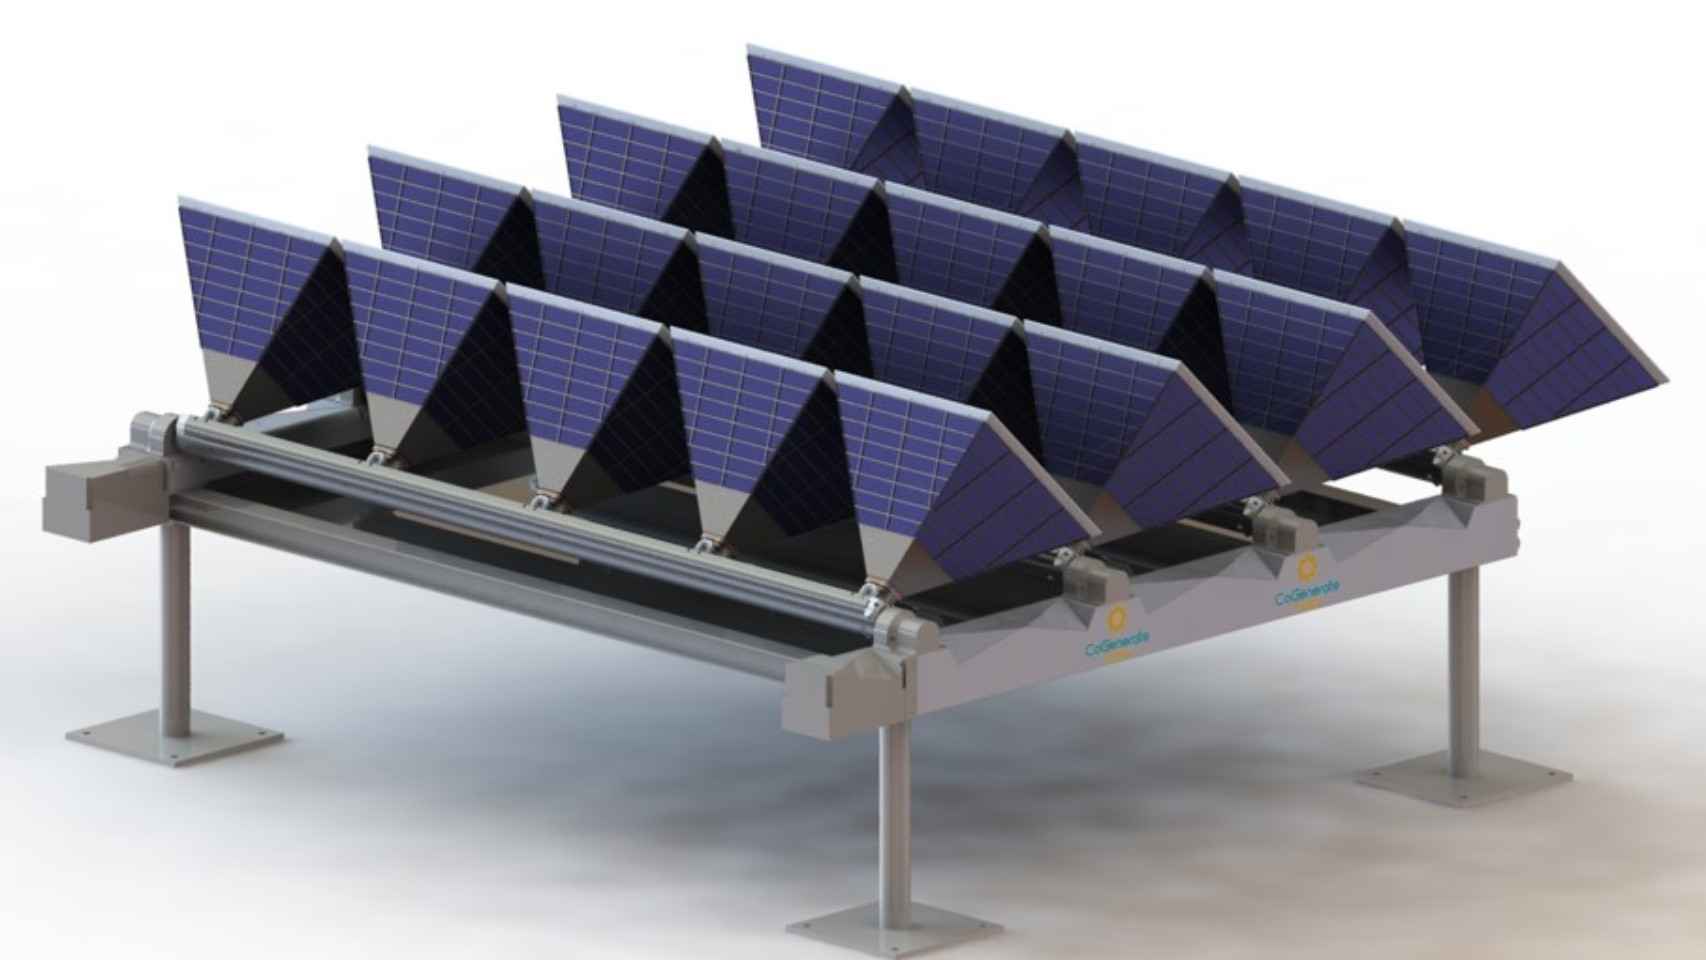 Así es iPyramid-1P, el sistema de cogeneración solar.